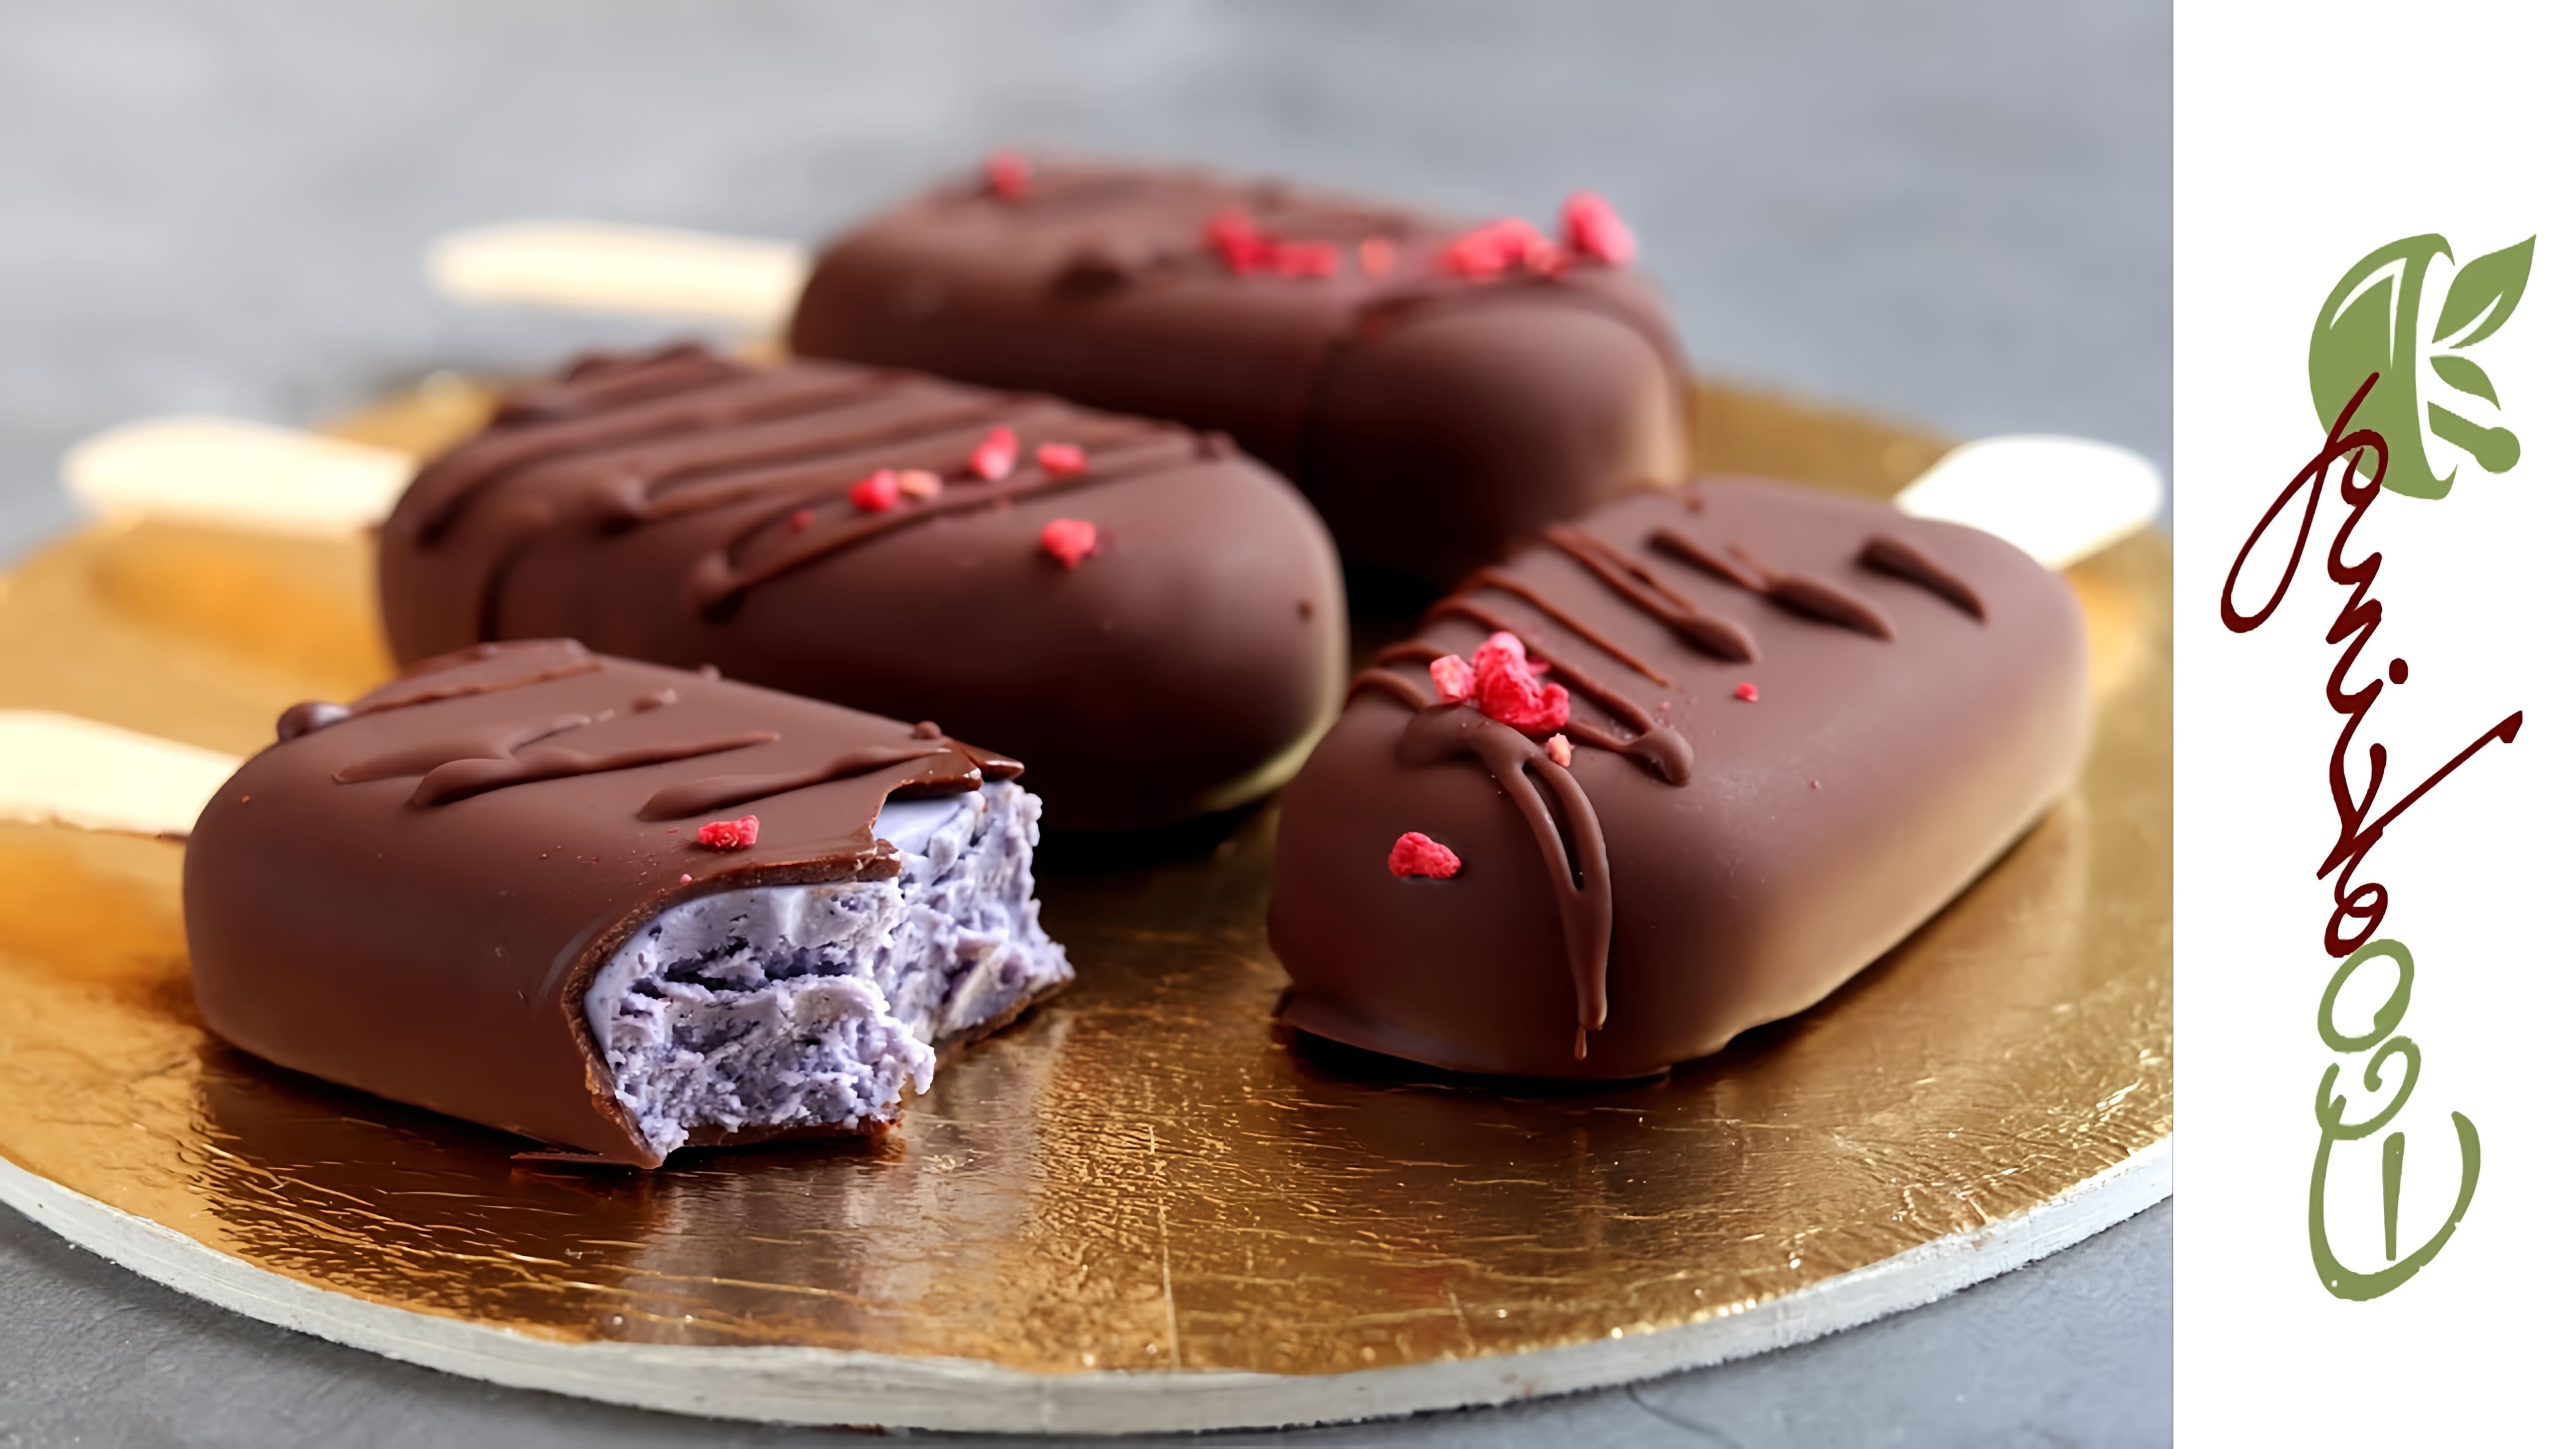 В этом видео демонстрируется рецепт не творожных сырков в шоколаде на ферментированном кешью